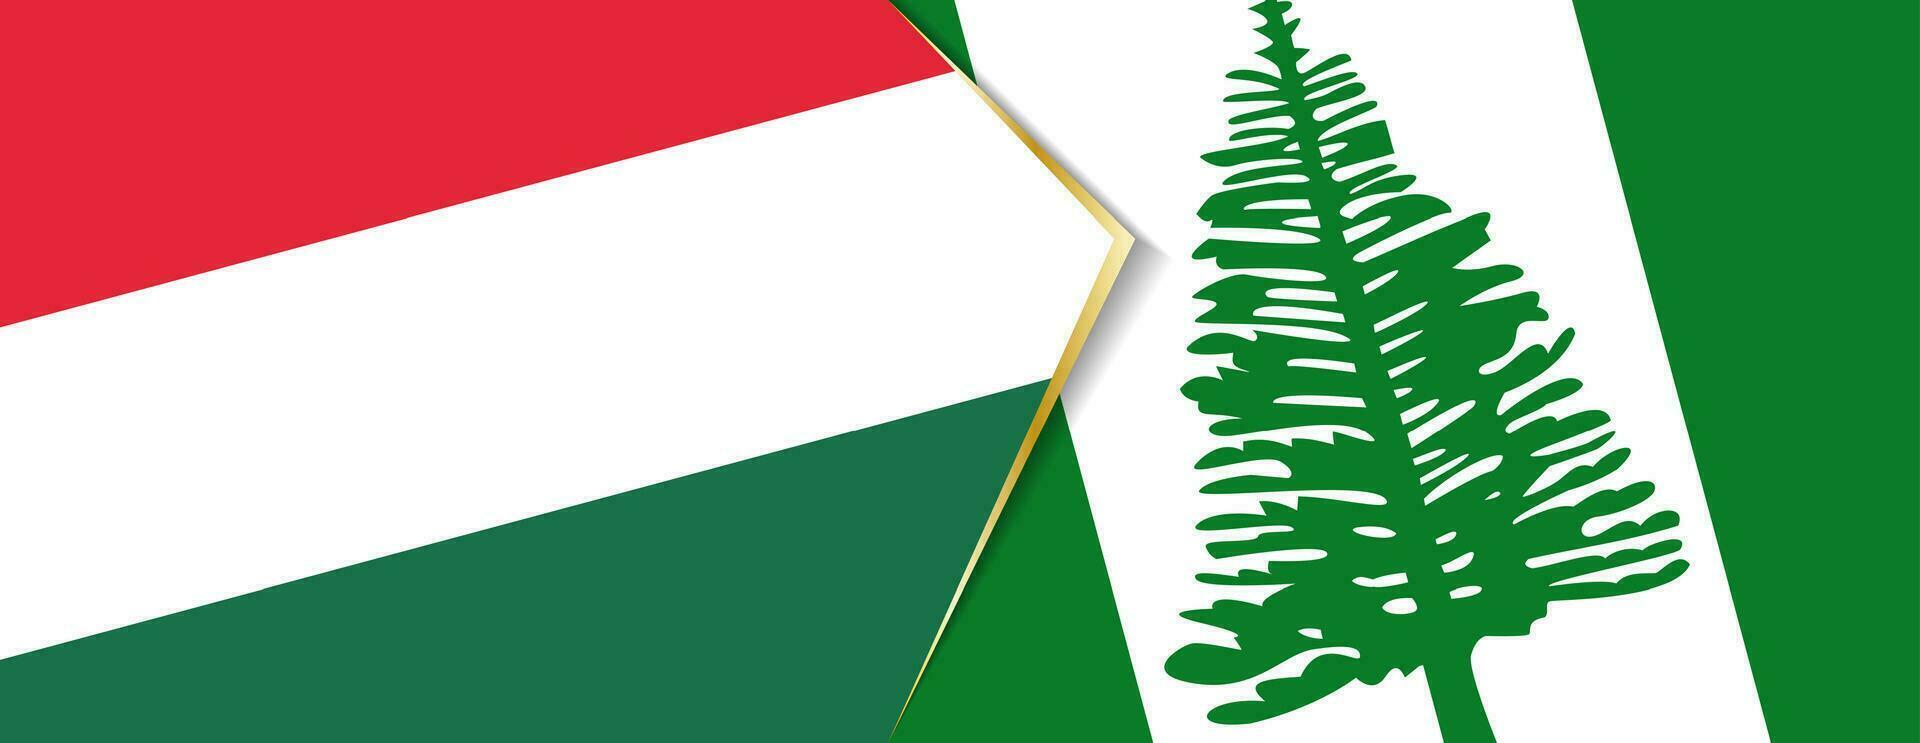 Hungria e Norfolk ilha bandeiras, dois vetor bandeiras.